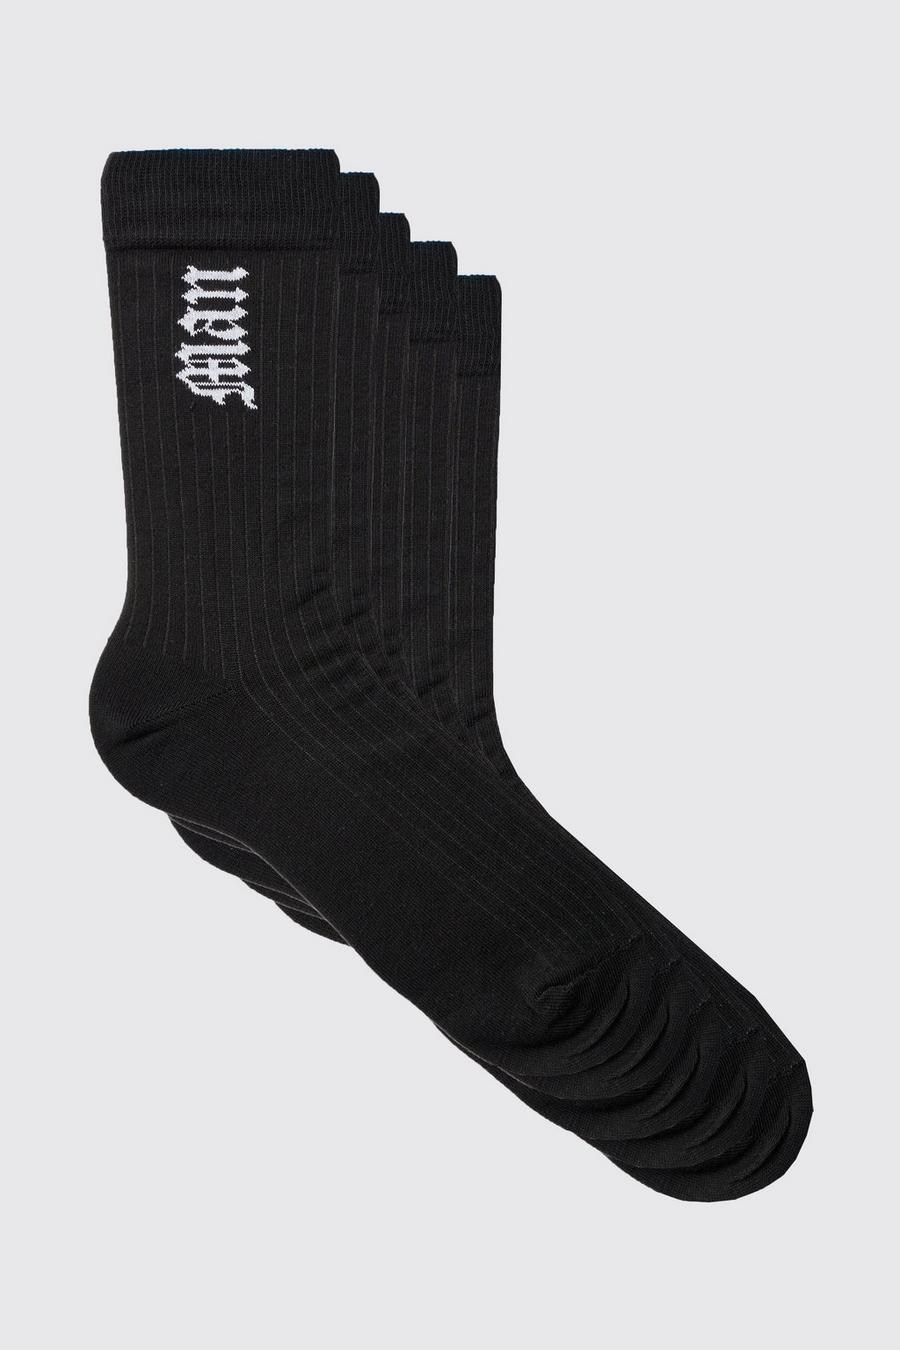 Pack de 5 pares de calcetines deportivos MAN con letras góticas, Black